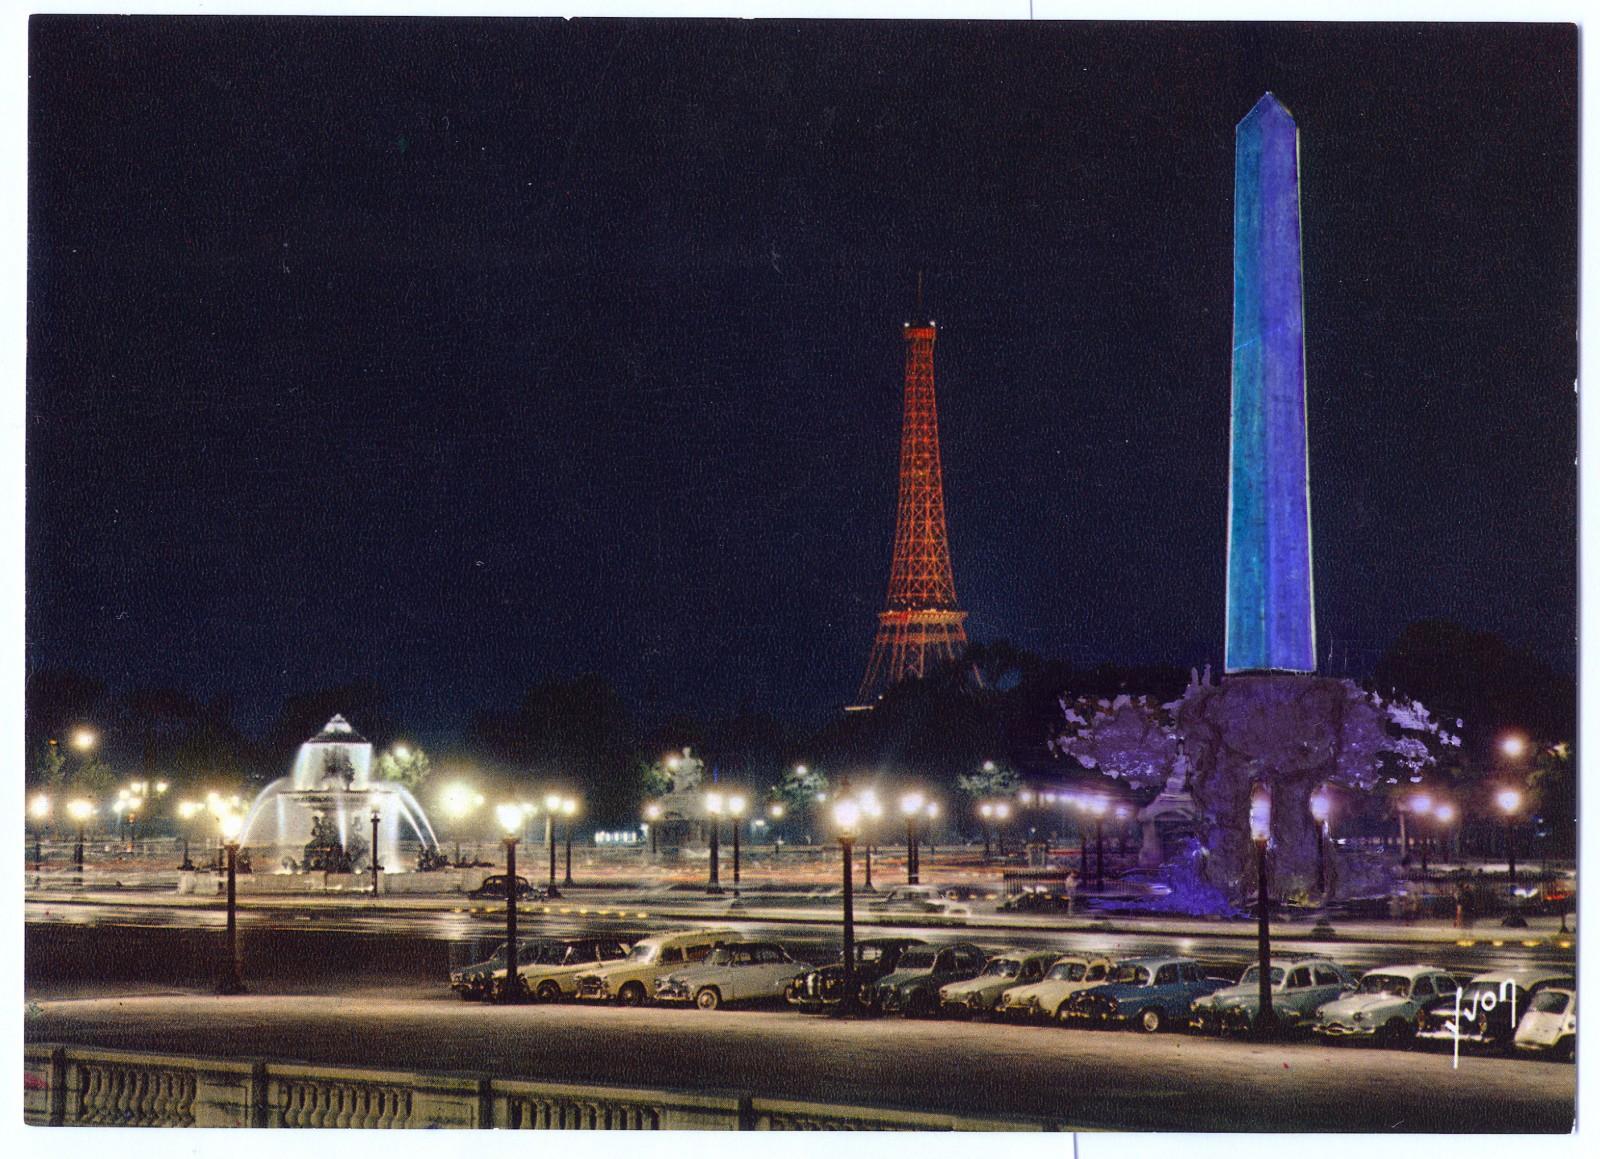 Project of blue lighting of the Obelisk, Place de la Concorde, Paris